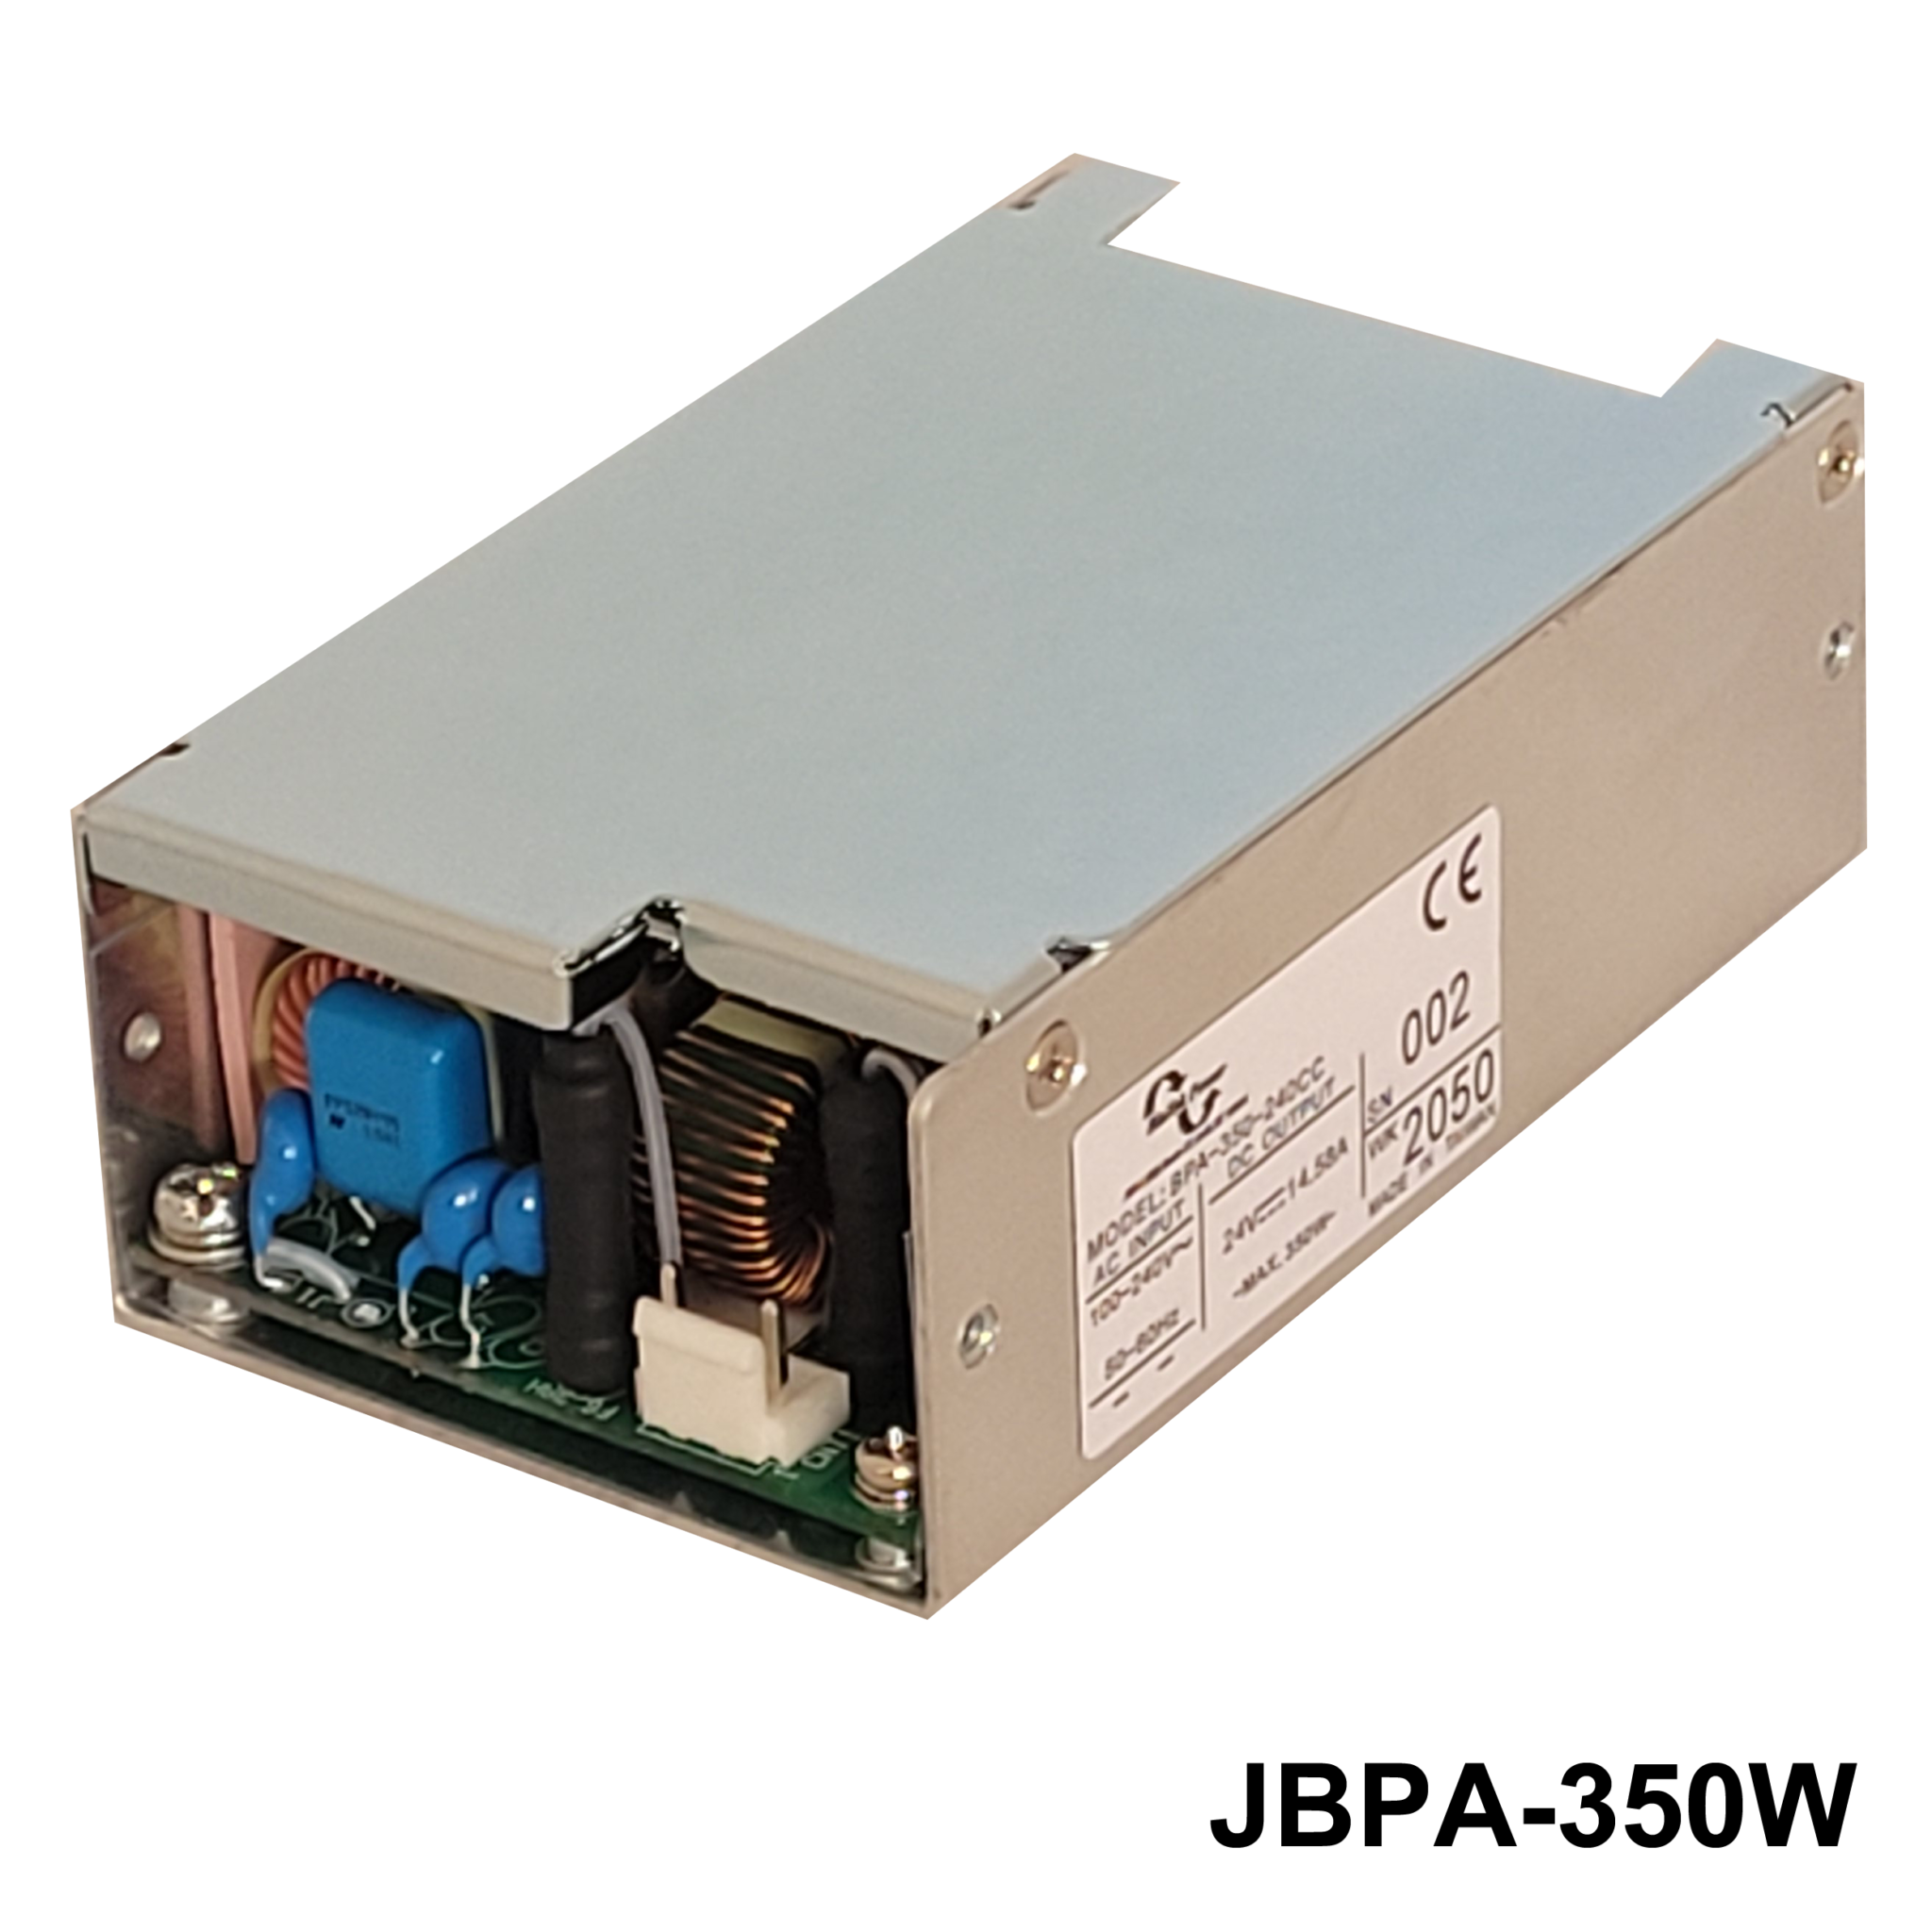 JBPA-350WSeries6